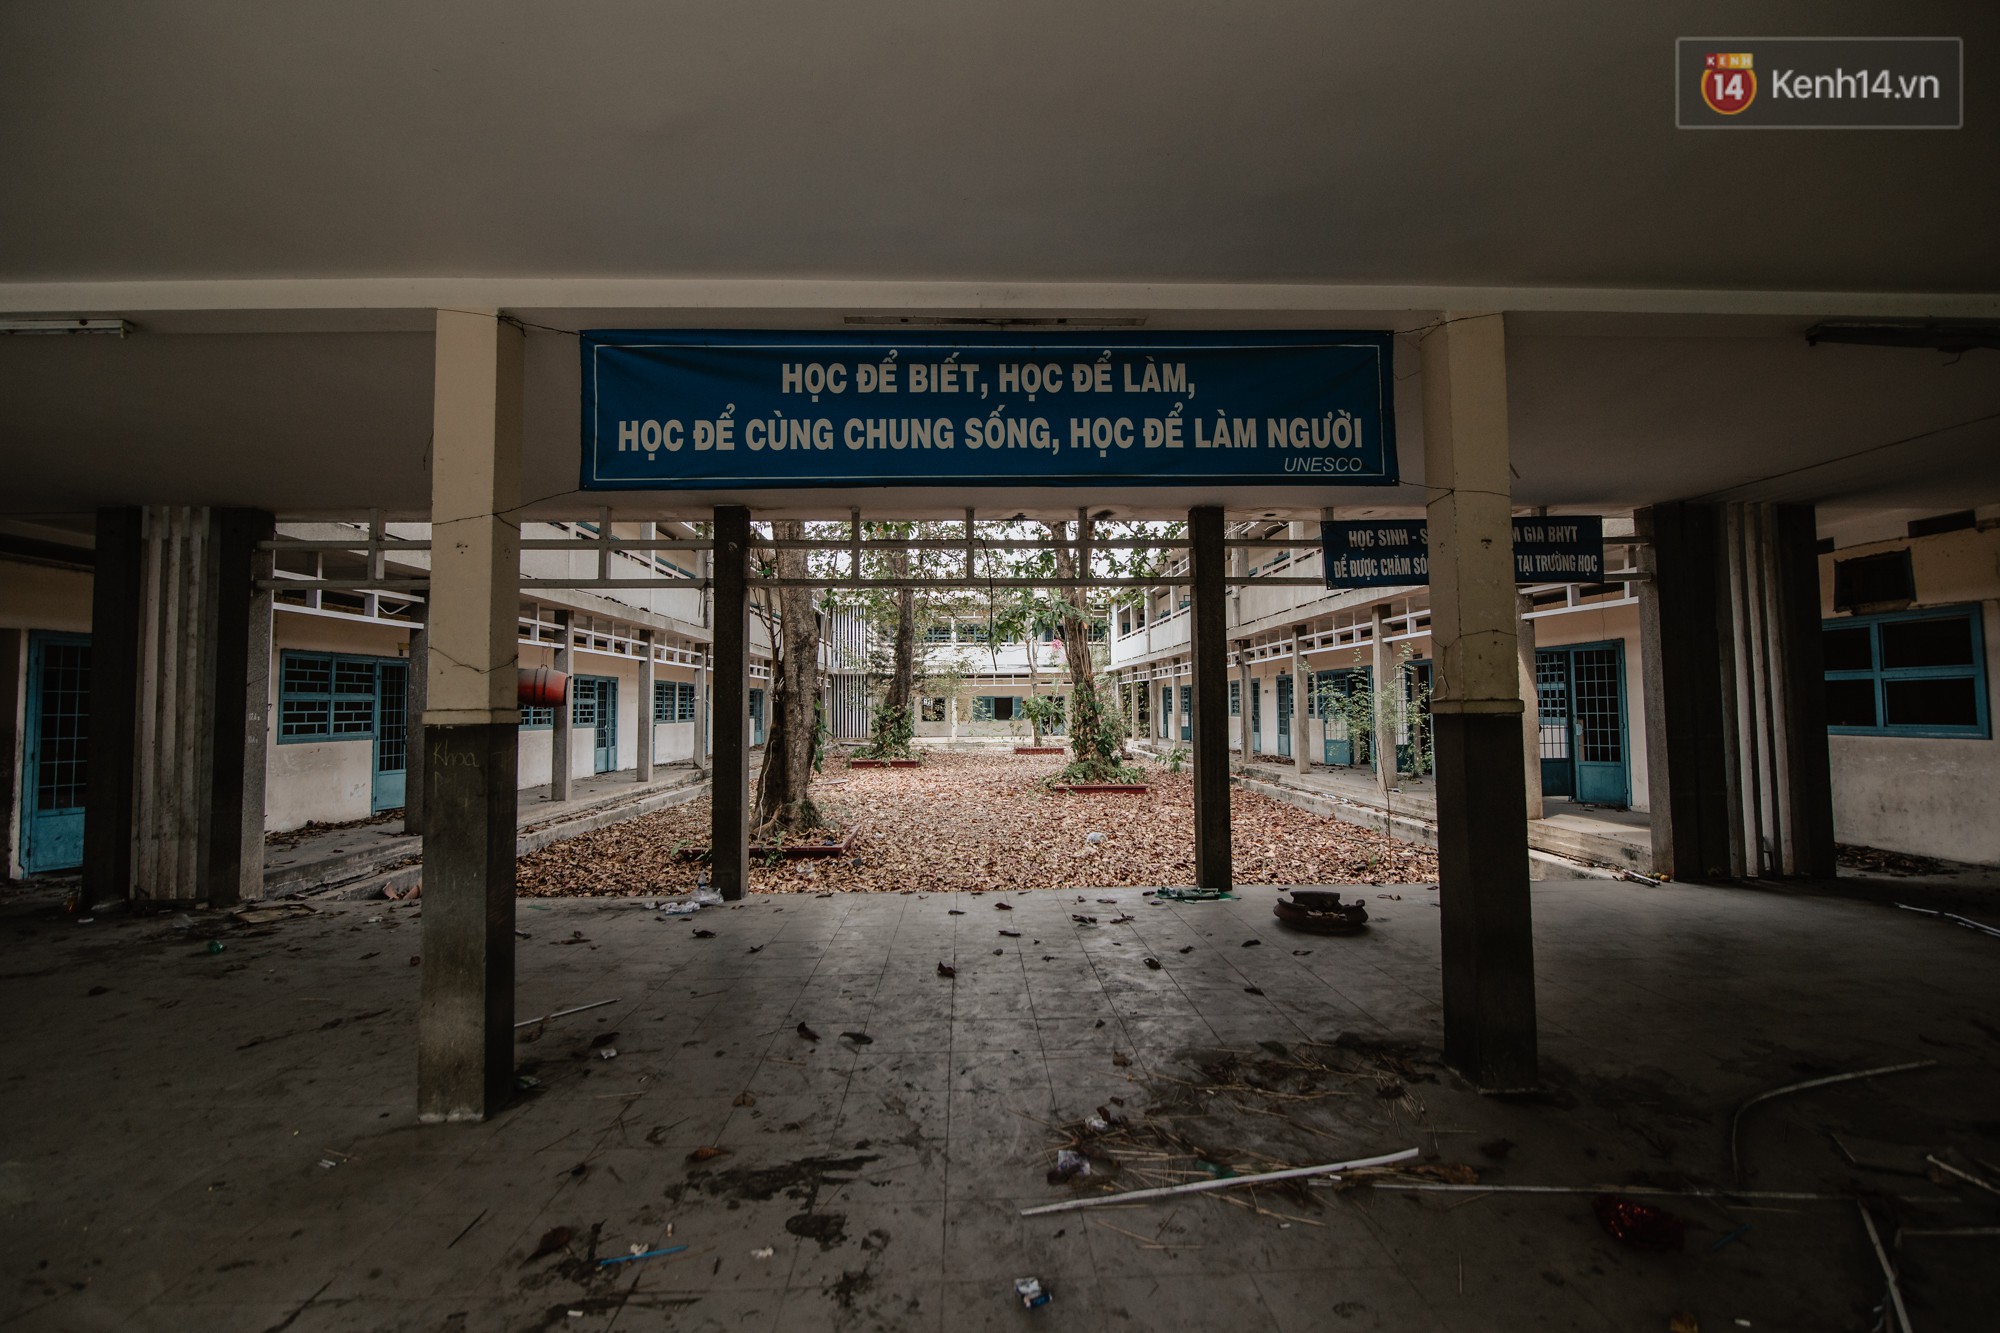 Khung cảnh rợn người bên trong trường học 40 năm tuổi bị bỏ hoang tại Sài Gòn - Ảnh 7.